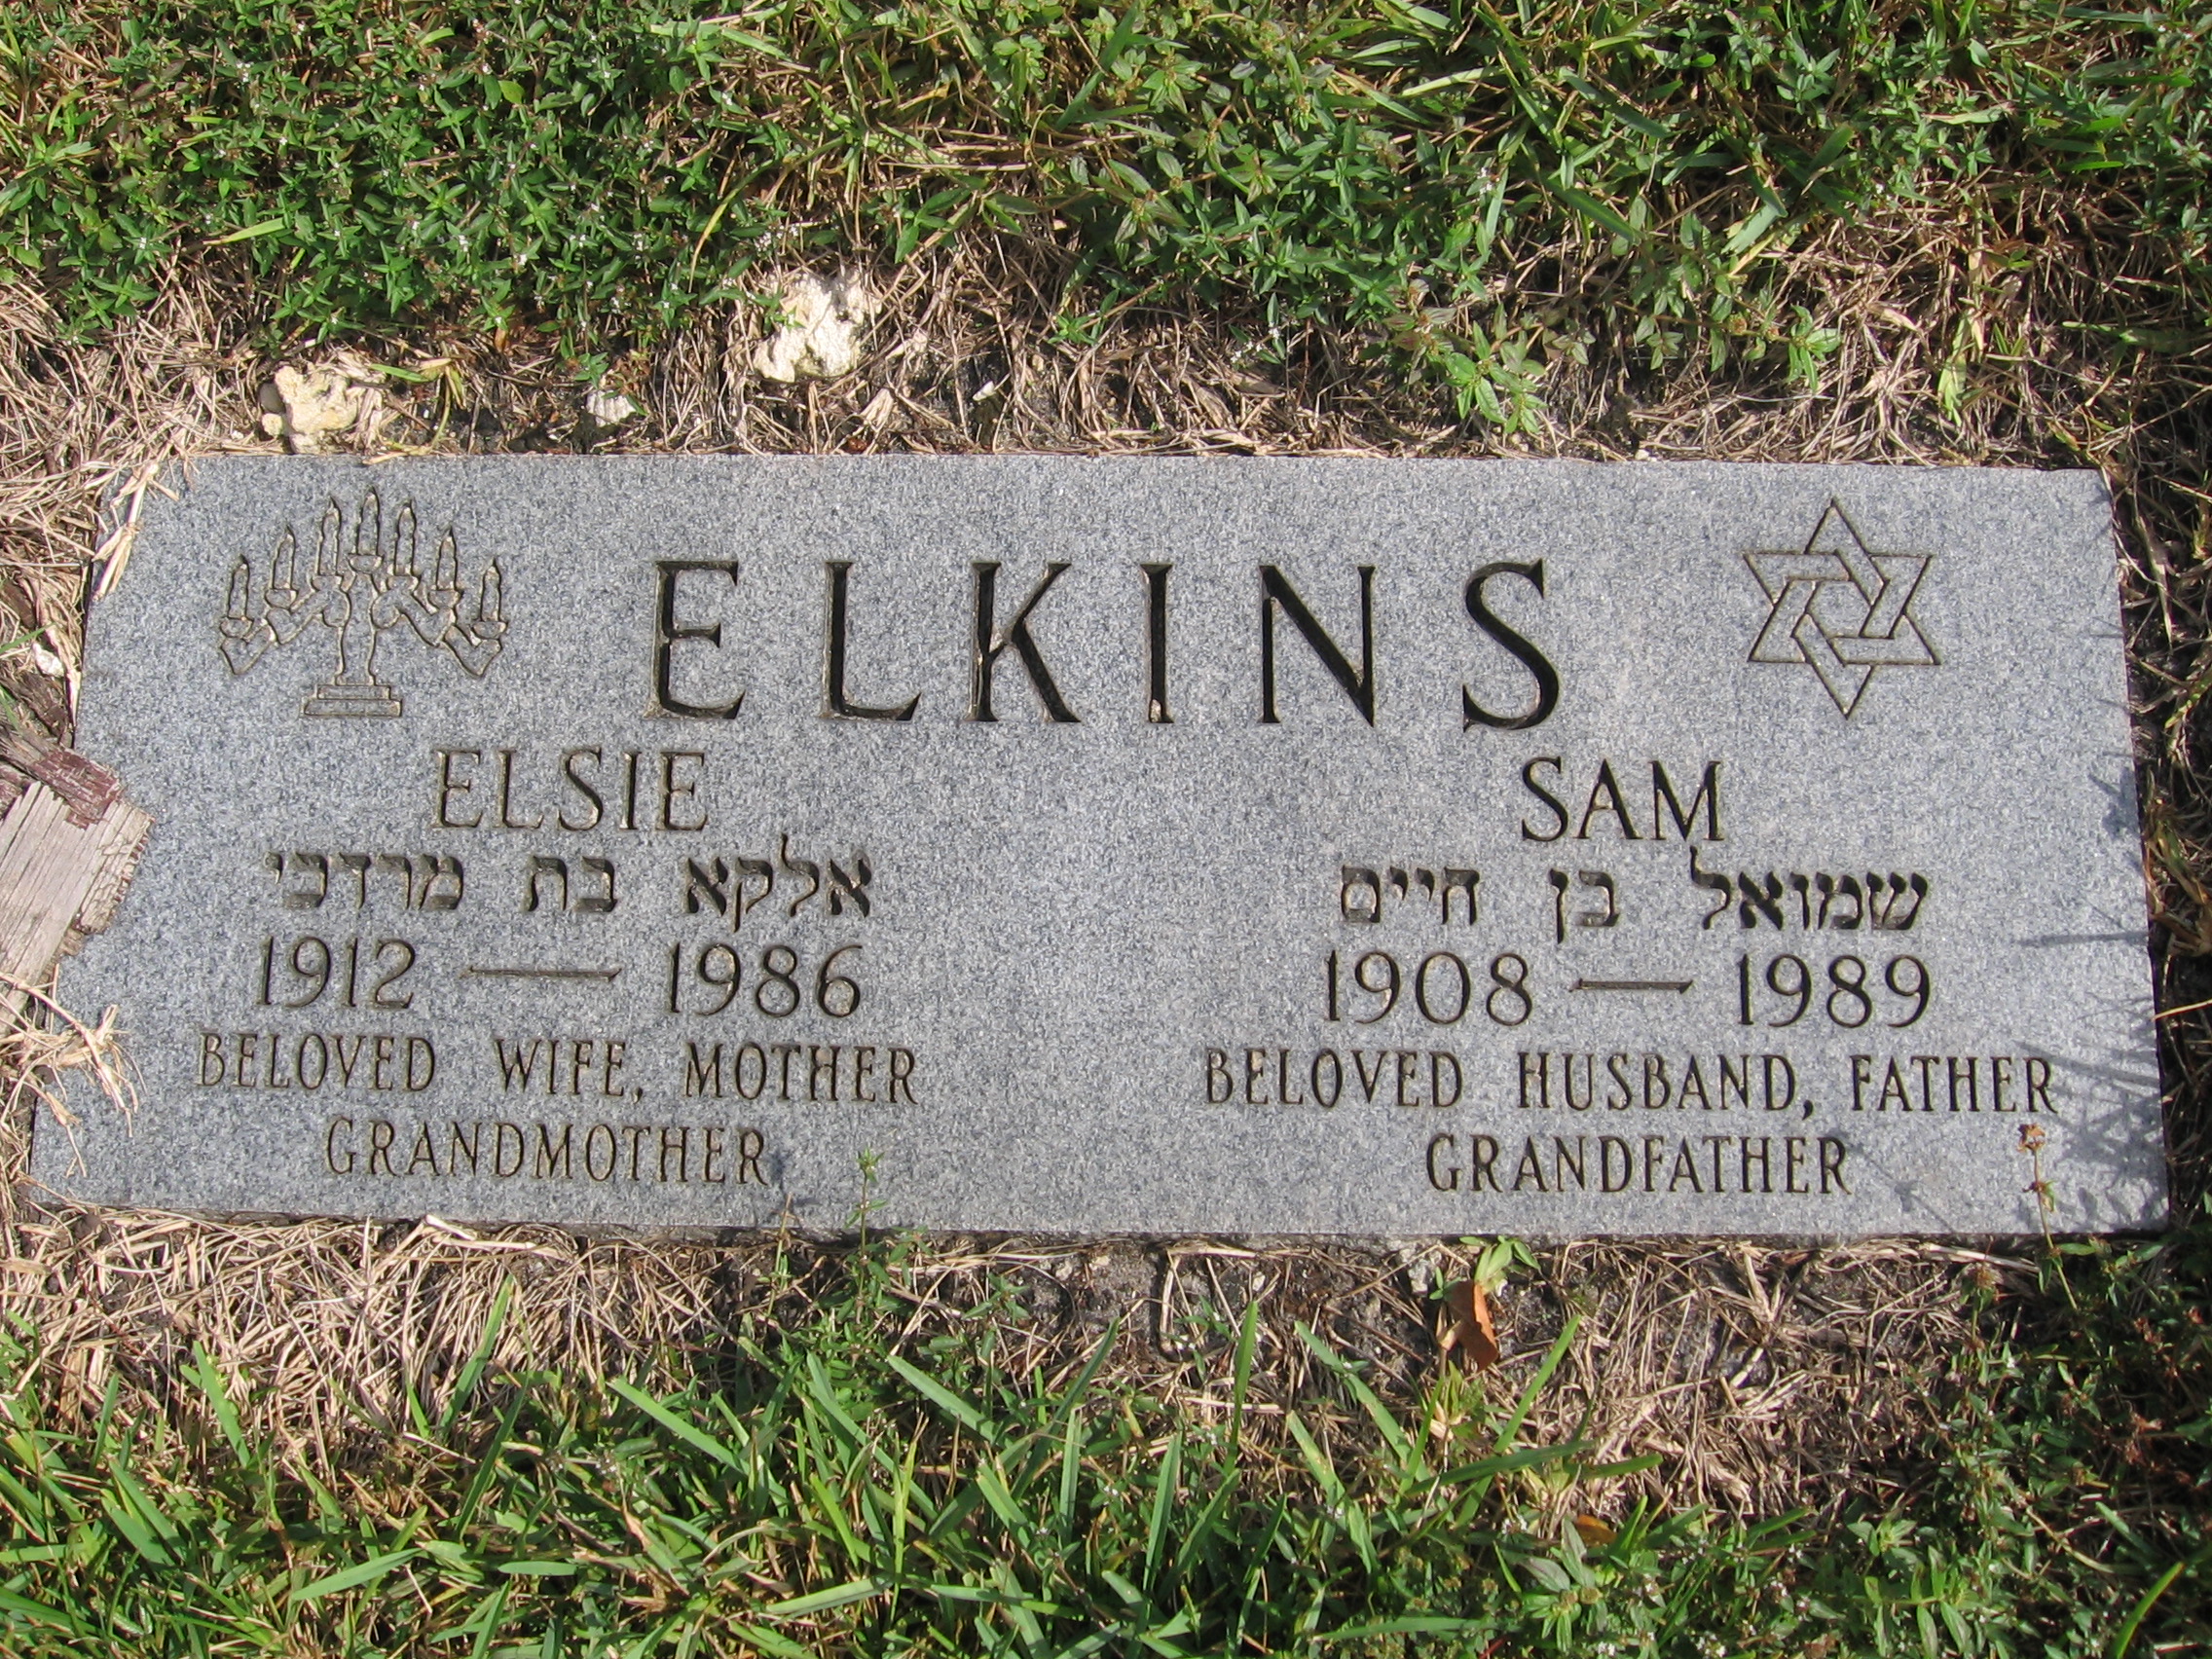 Elsie Elkins